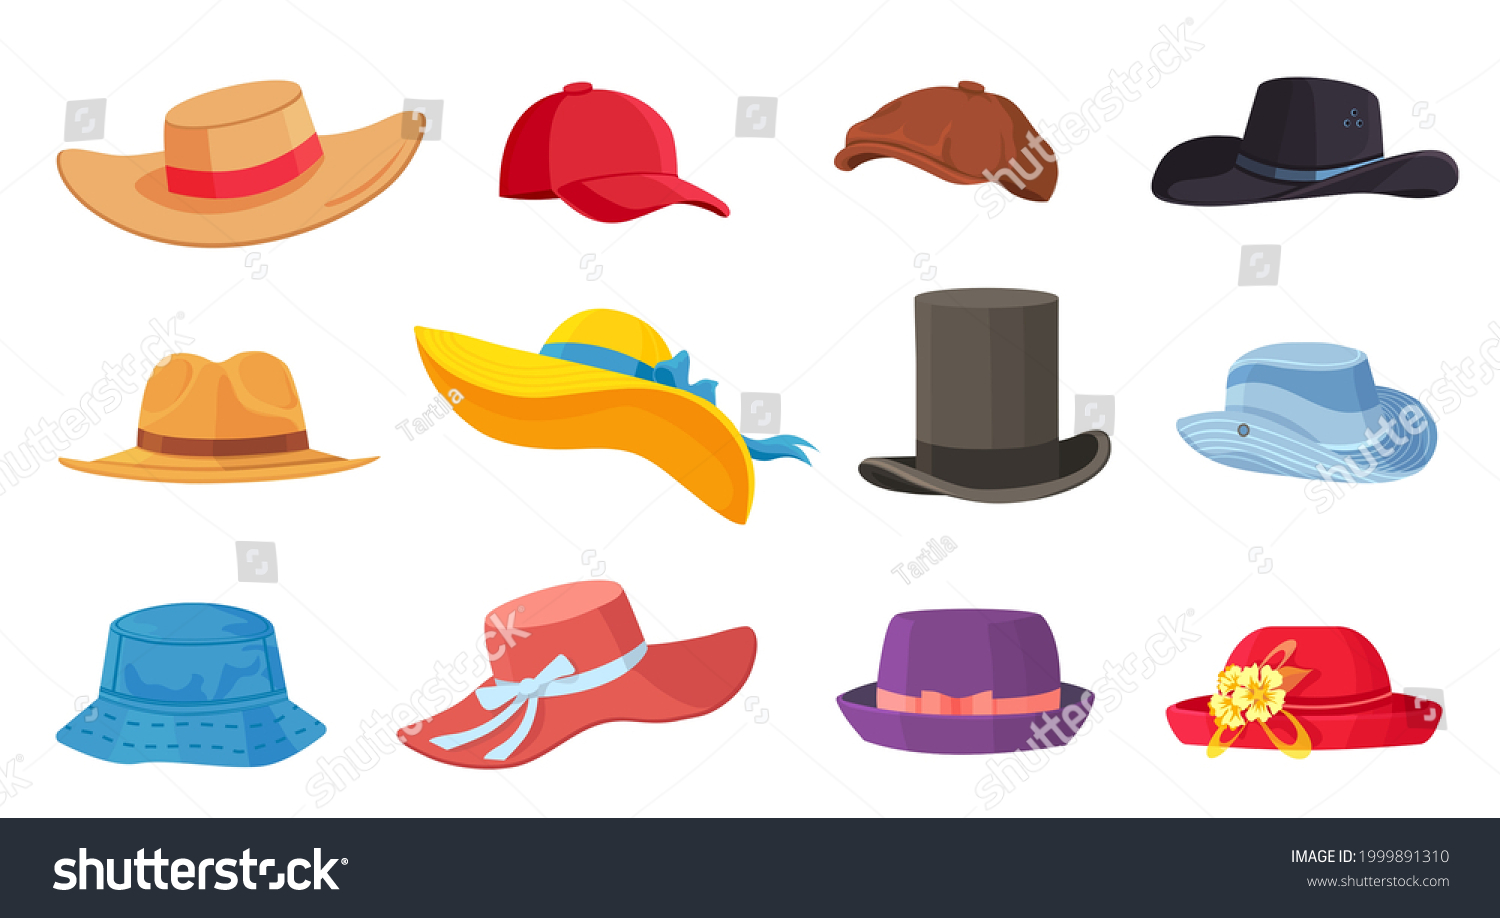 Cartoon Hats Female Male Headwear Derby Stock Vector (Royalty Free ...